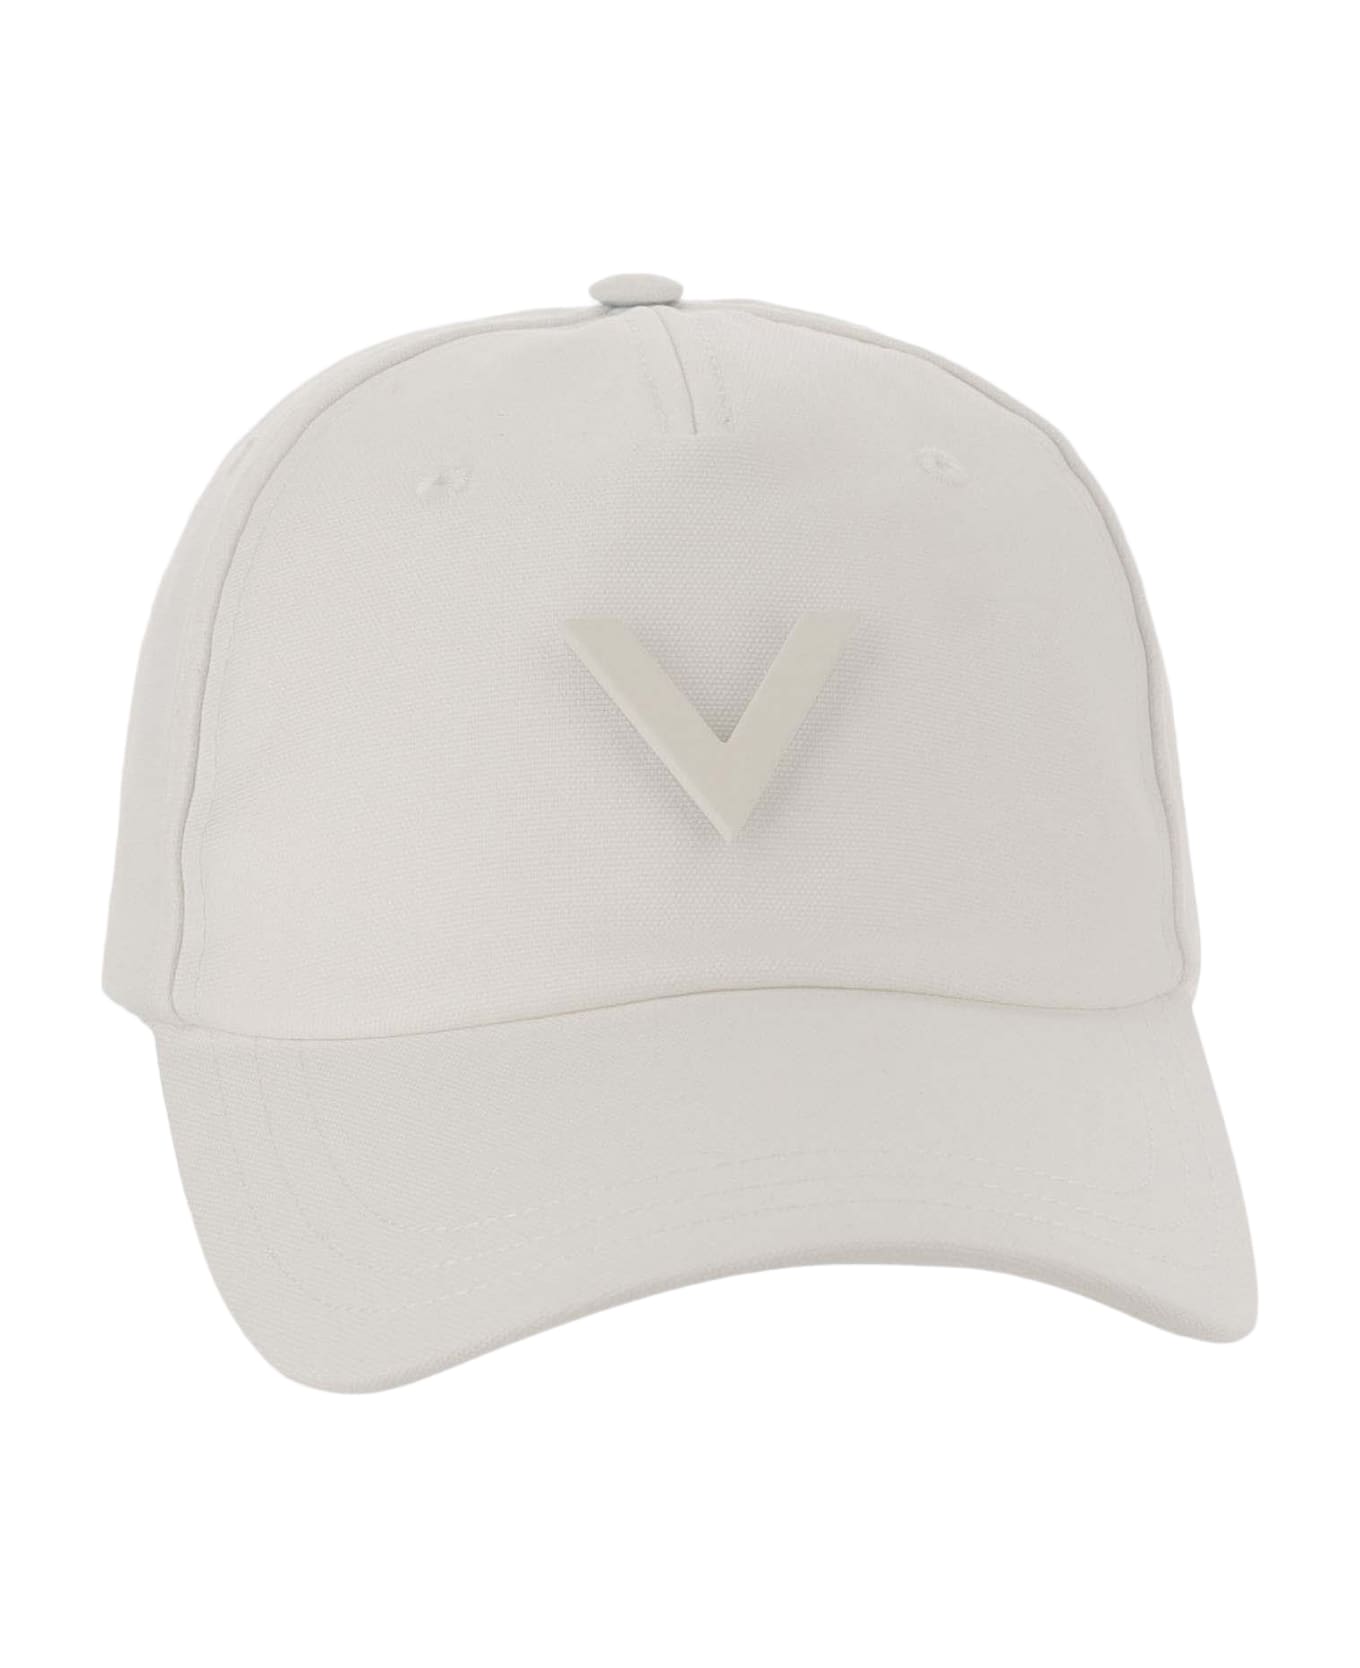 Valentino Garavani Canvas Hat With Vlogo - Ivory 帽子